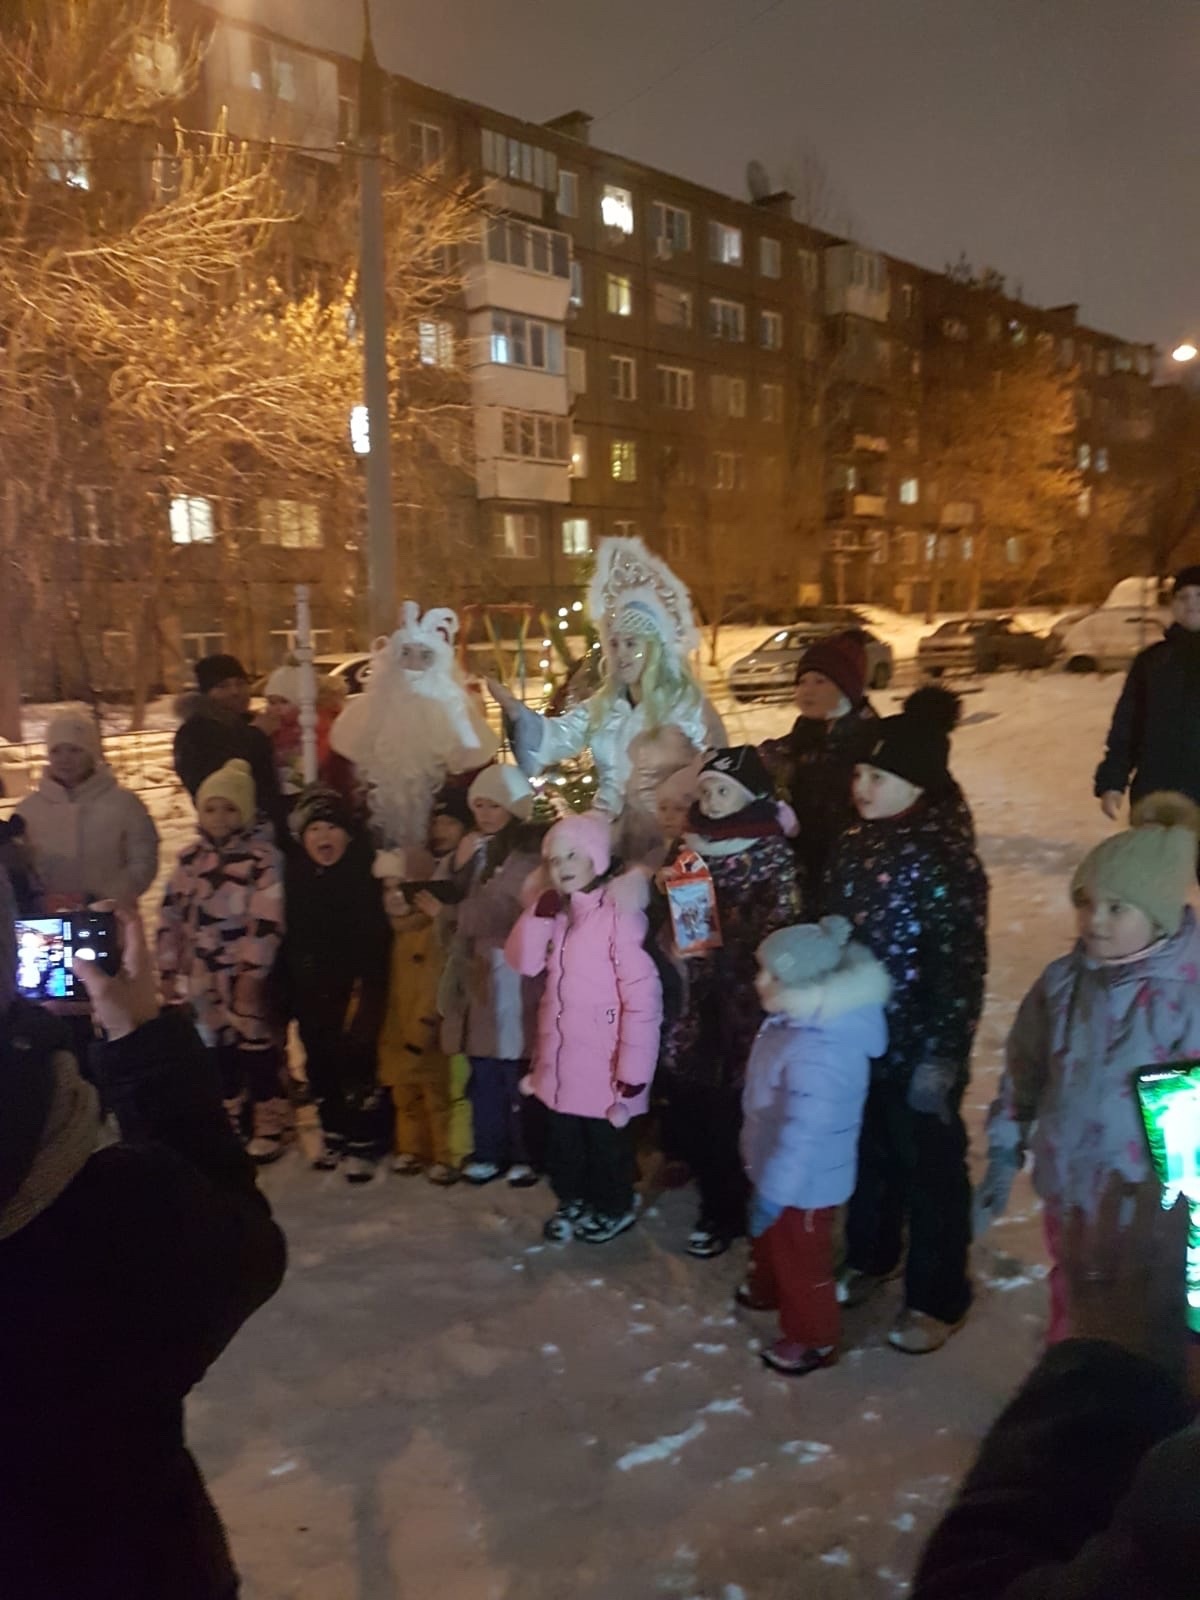 До нового года 5 дней!
Наши Дедушка Мороз и Снегурочка поздравили детей и взрослых на 3-Интернационала 58 и 71.
Мы присоединя...